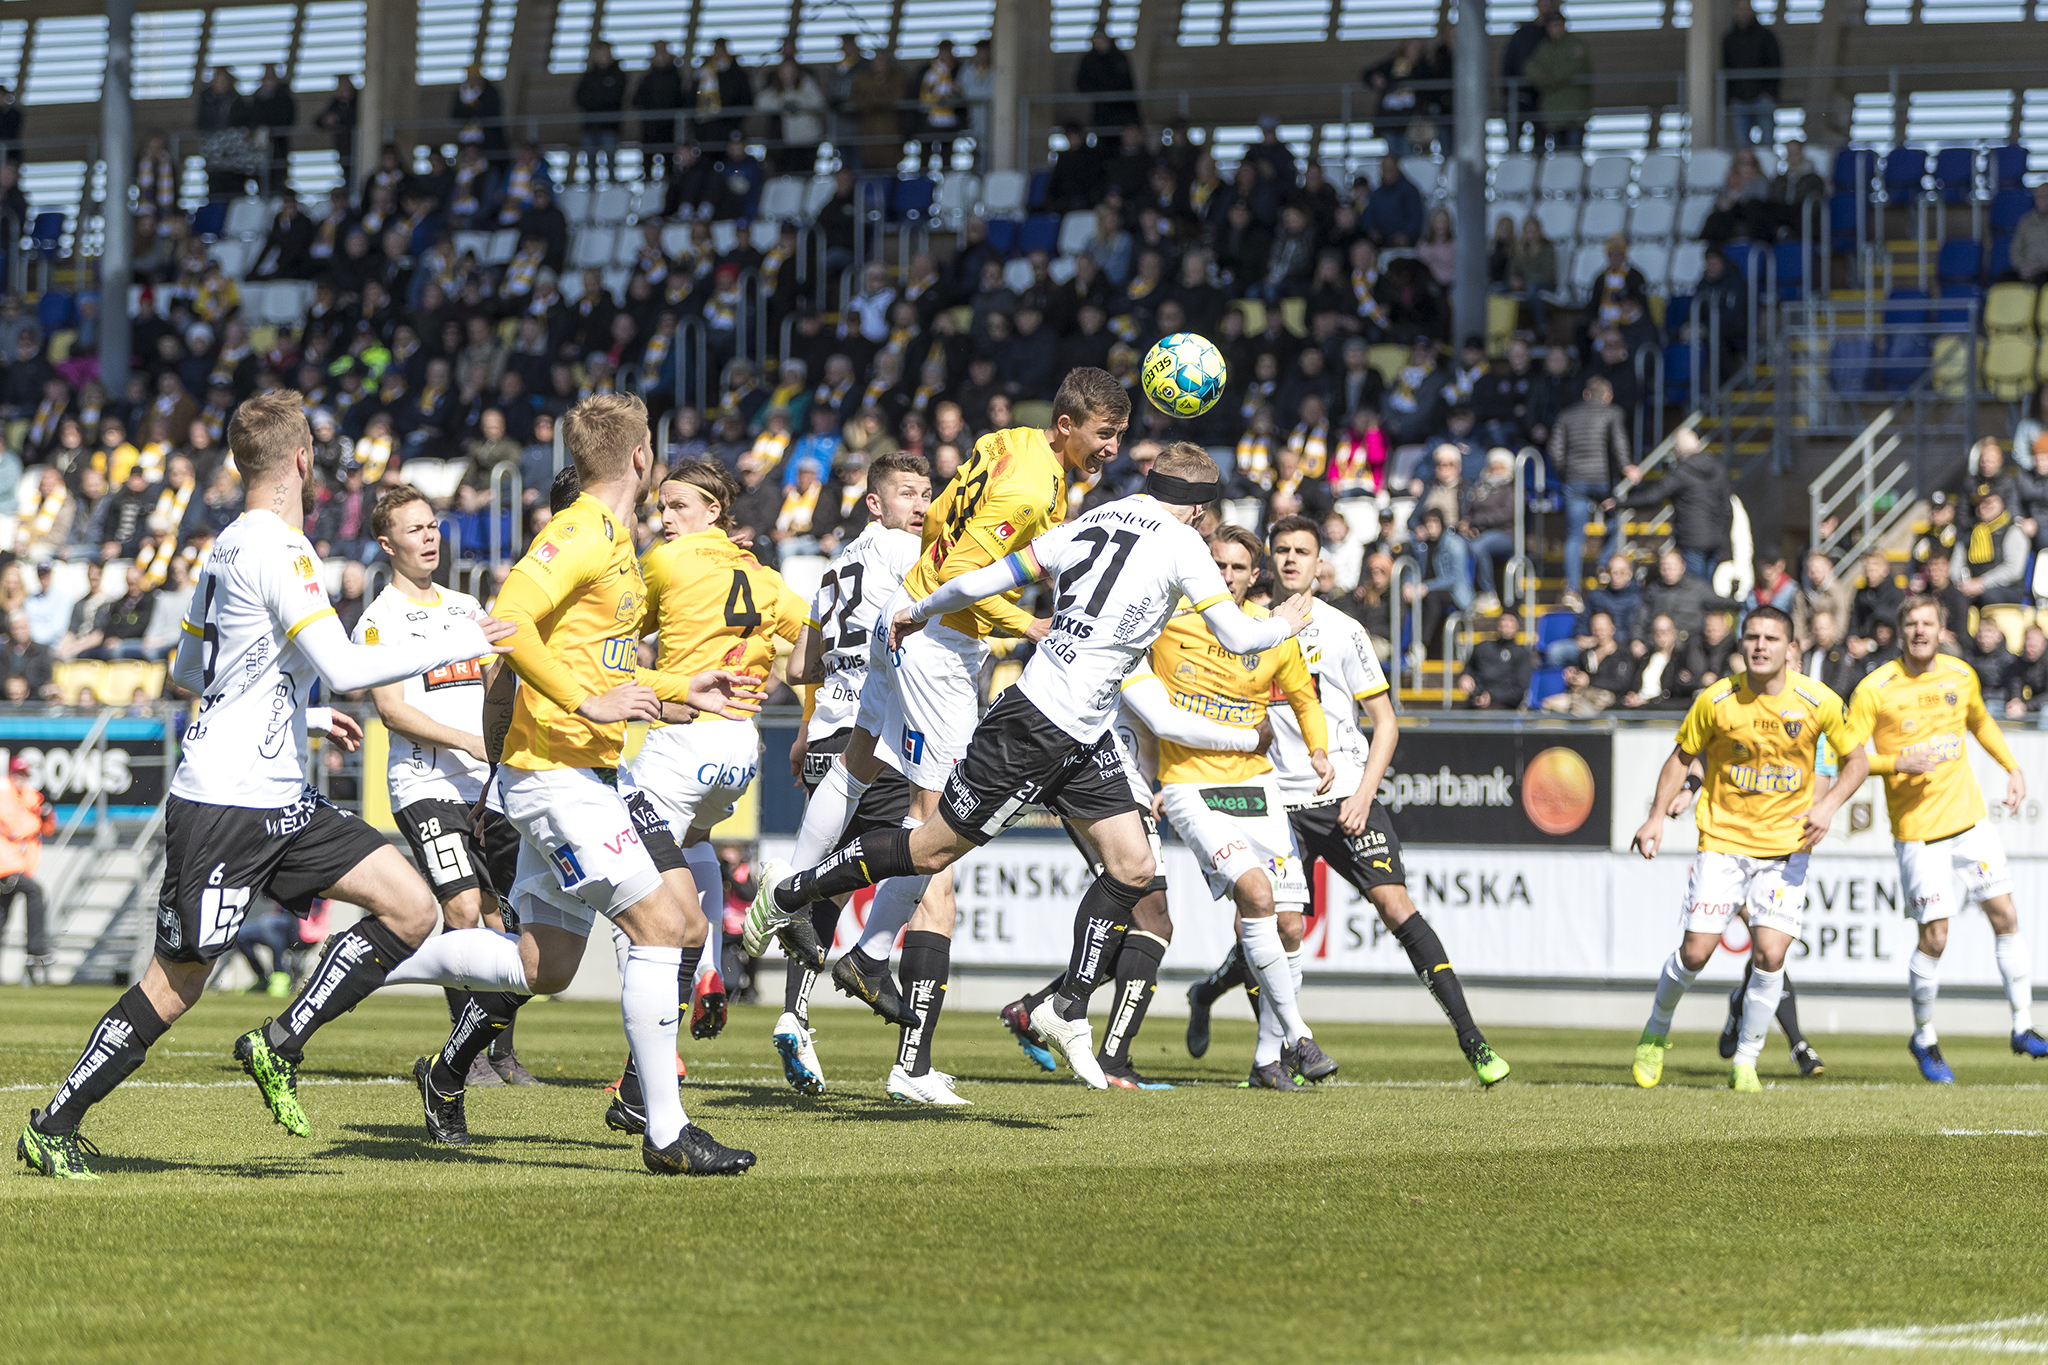 Inför IFK Norrköping borta: ”Ambition om att vinna”